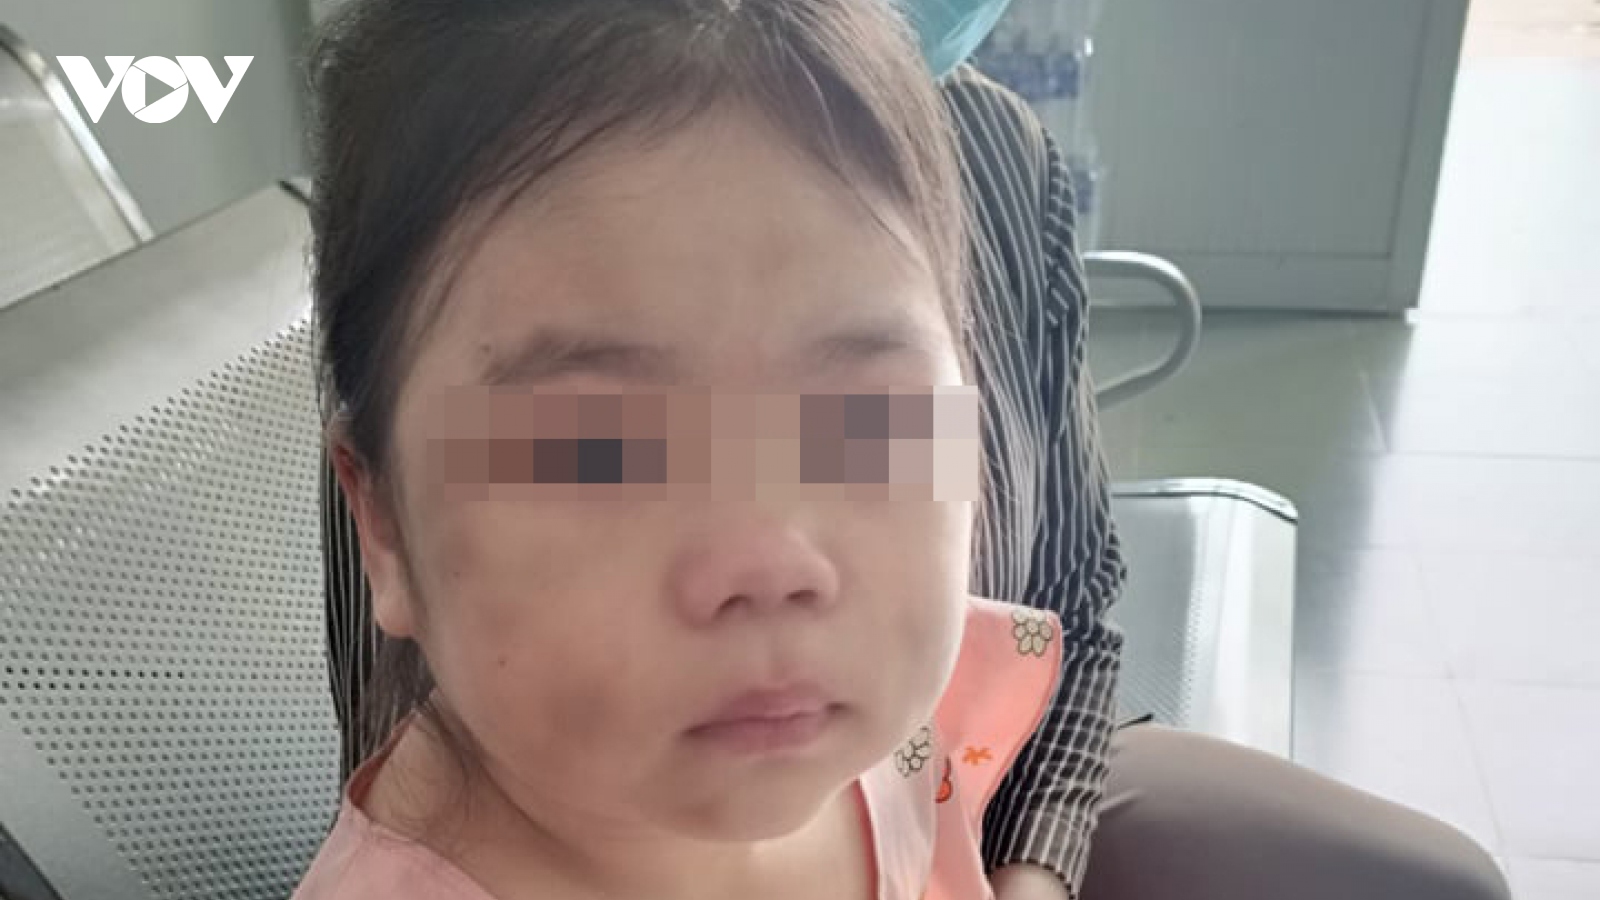 Bé gái 6 tuổi ở Bình Dương bầm tím mặt vì cha “lỡ tay khi dạy học"